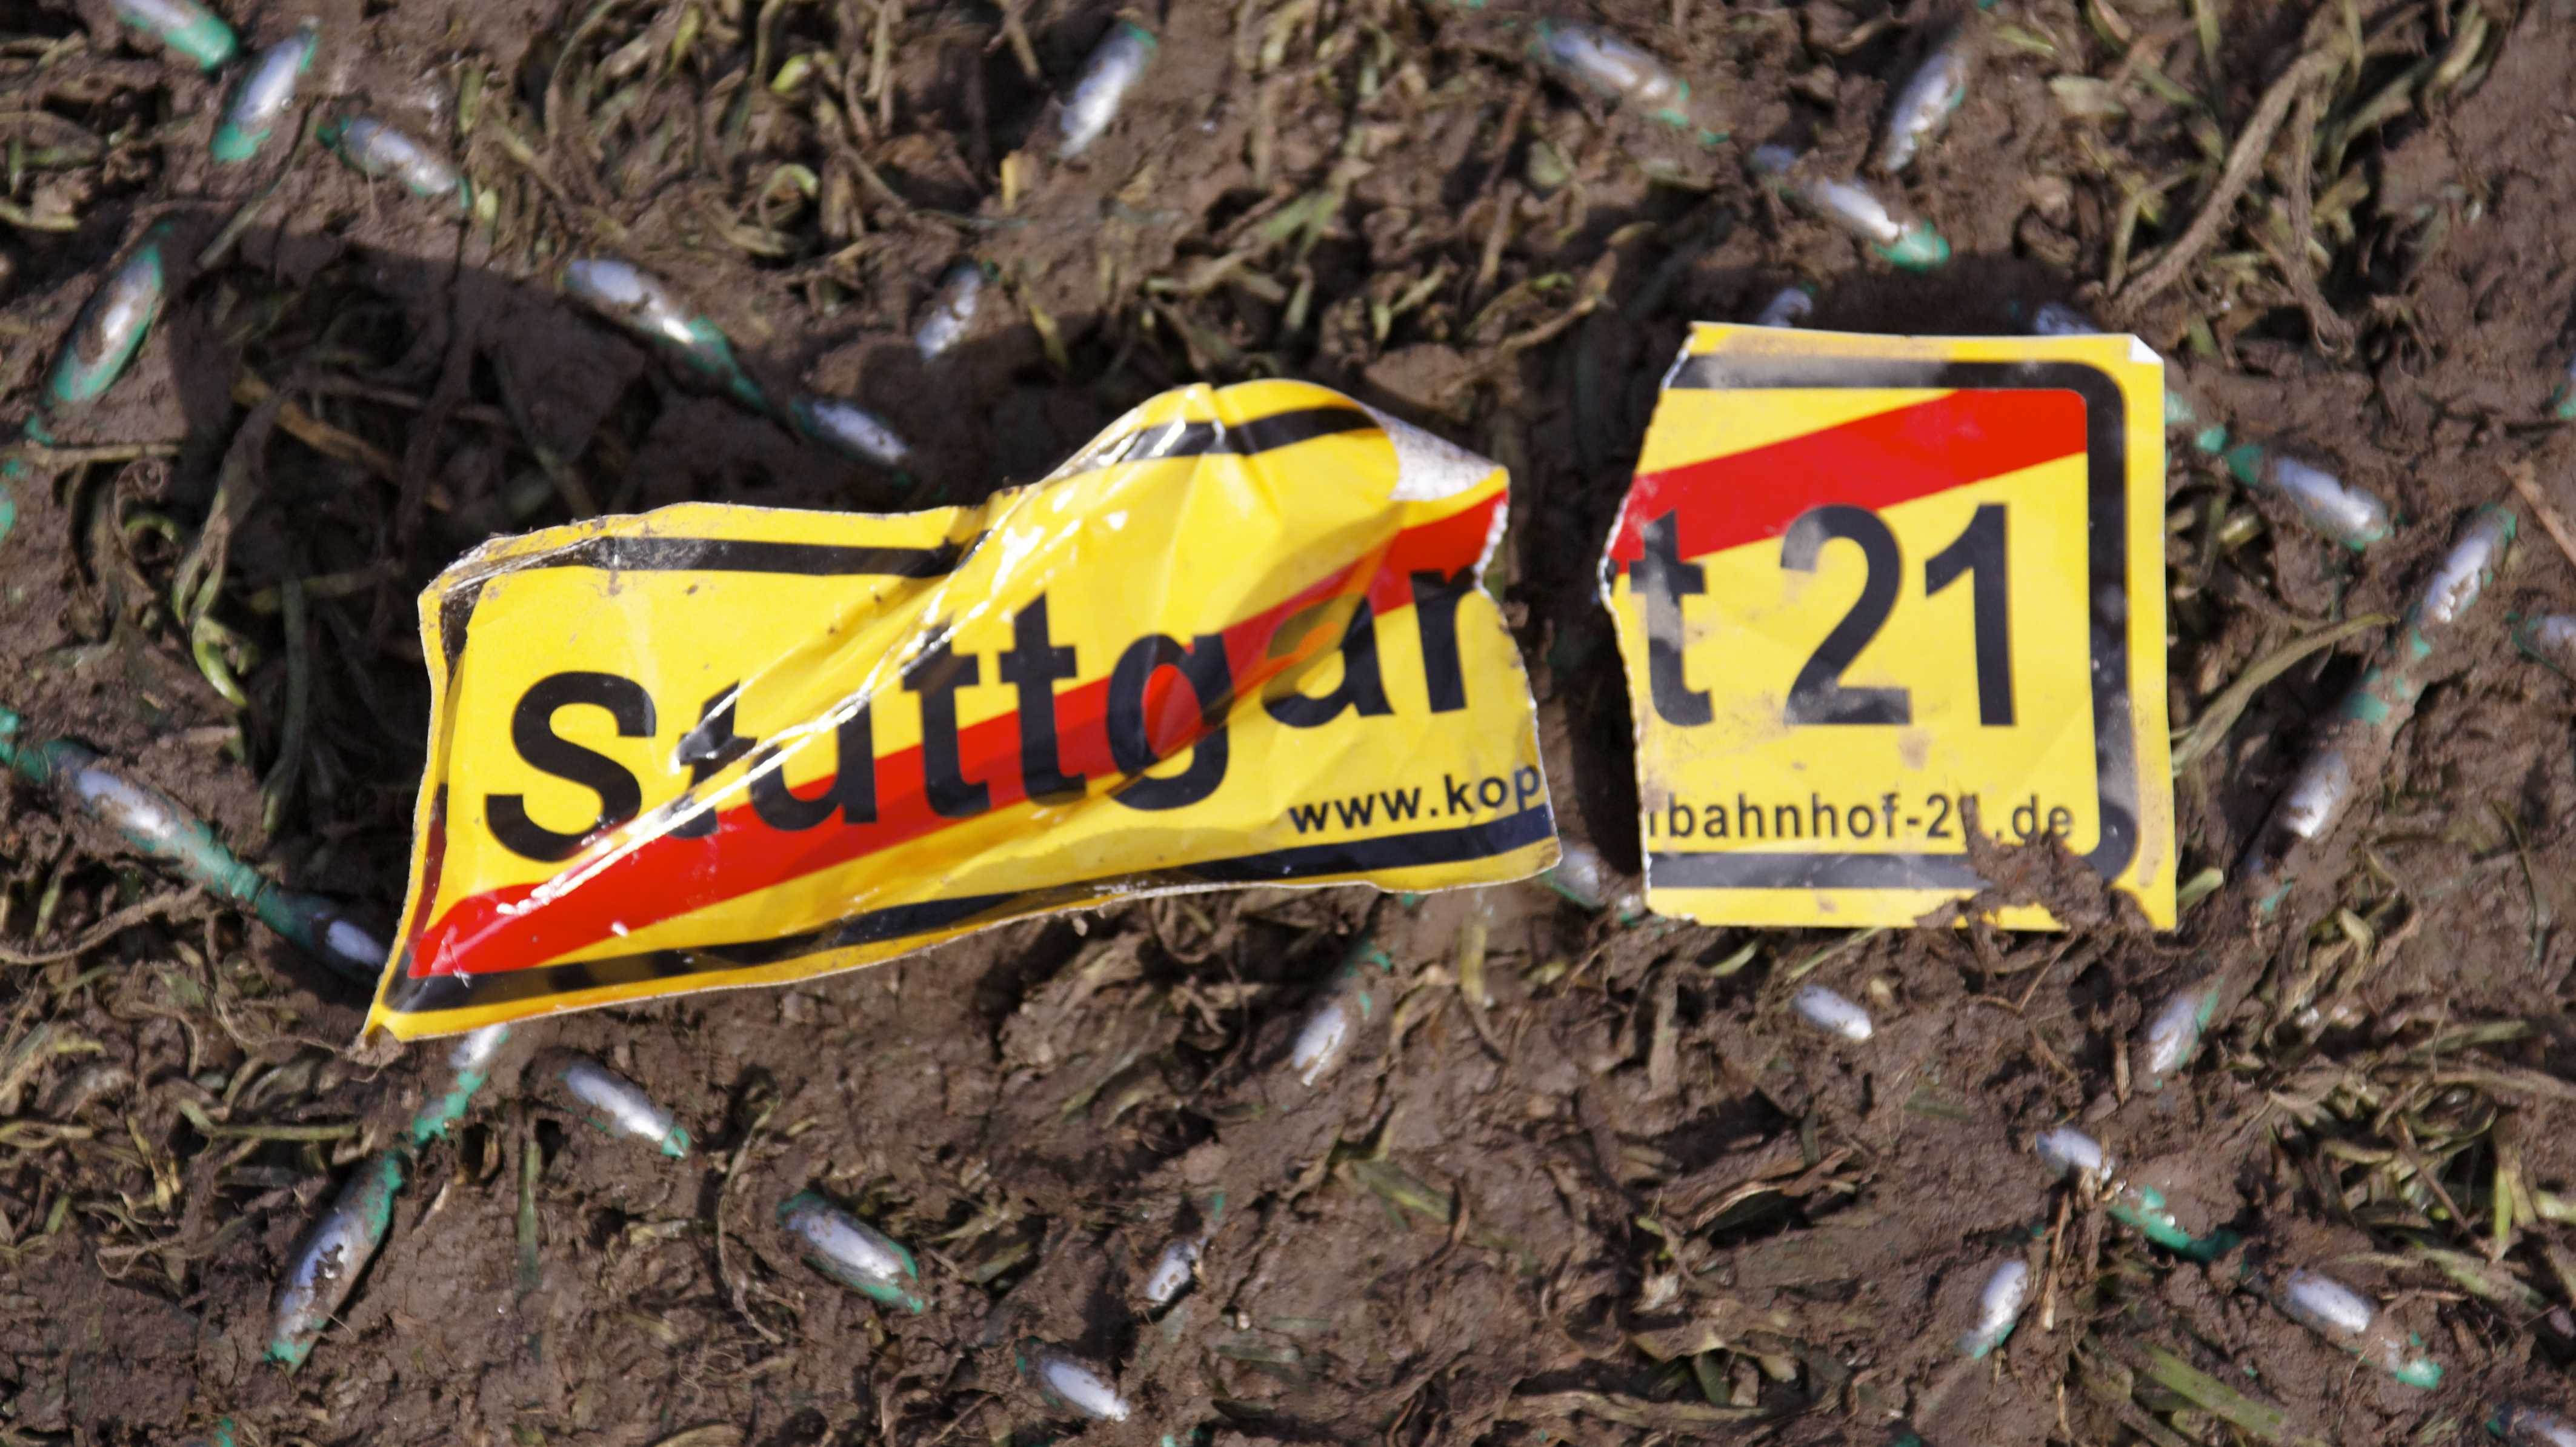 Protestschild gegen Bahnprojekt Stuttgart 21 liegt zerbrochen am Boden